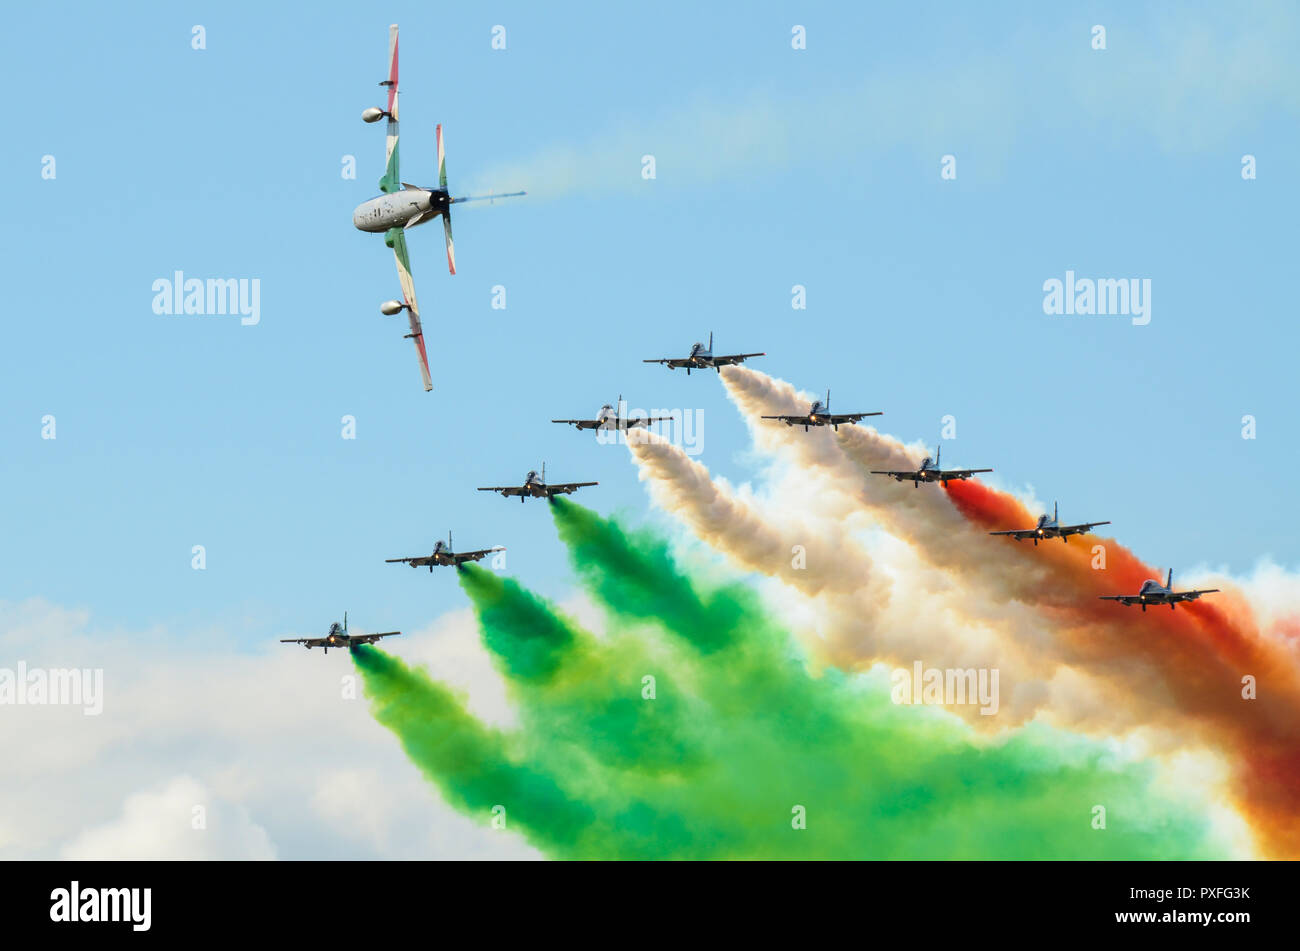 Frecce Tricolori, flèches tricolores, officiellement 313 Gruppo Addestramento Acrobatico, équipe acrobatique de l'armée de l'air italienne Aeronautica Militare. Afficher Banque D'Images